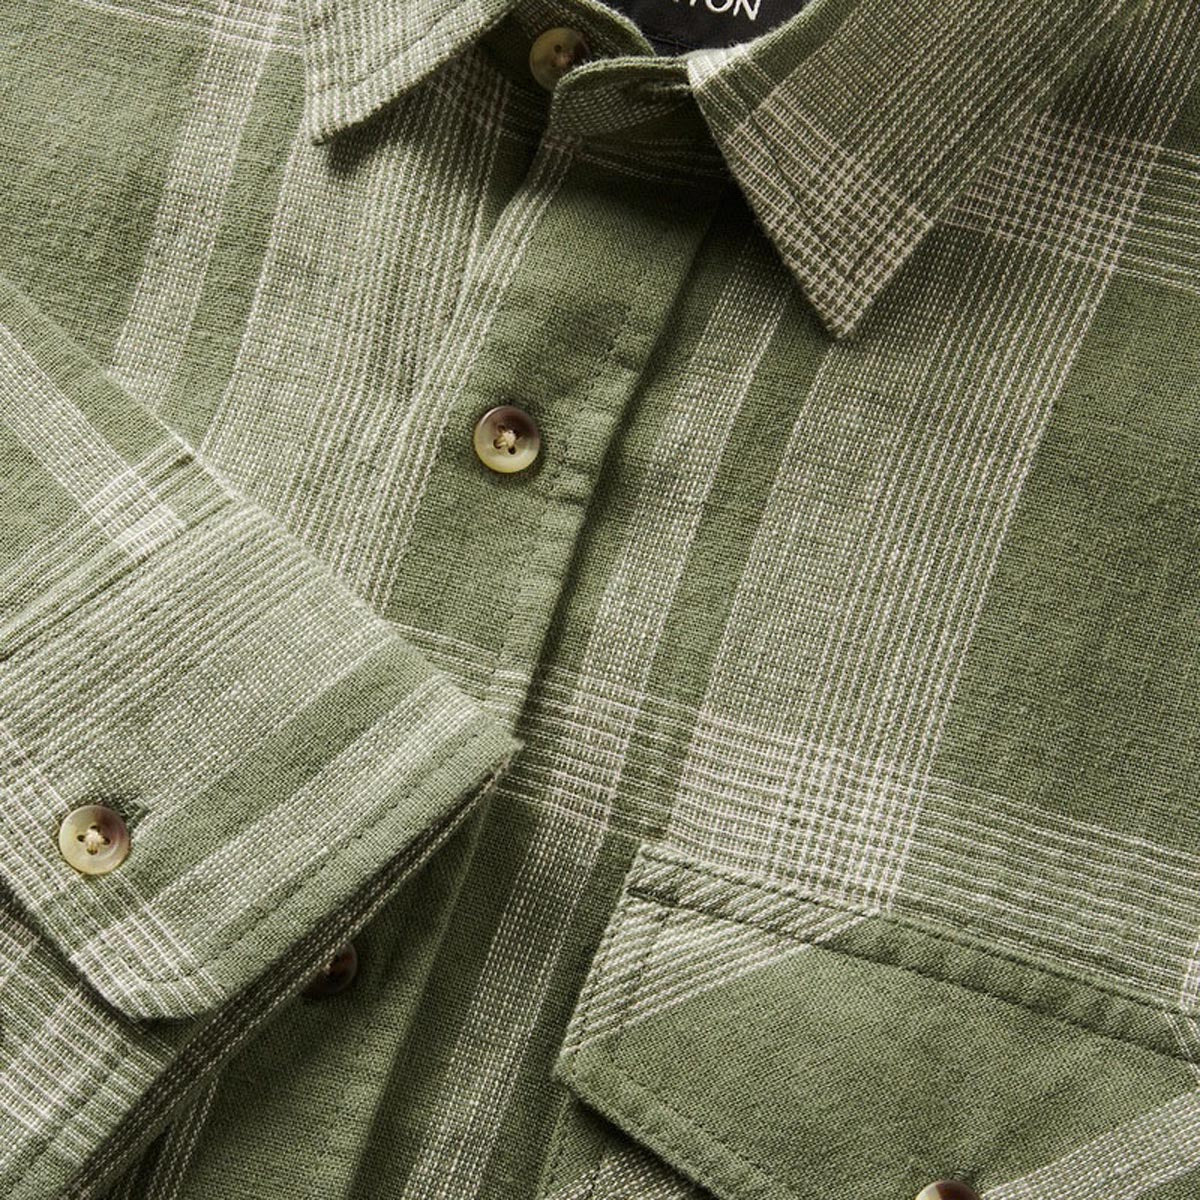 Brixton Memphis Linen Blend Long Sleeve Shirt - Olive Surplus/Whitecap image 3